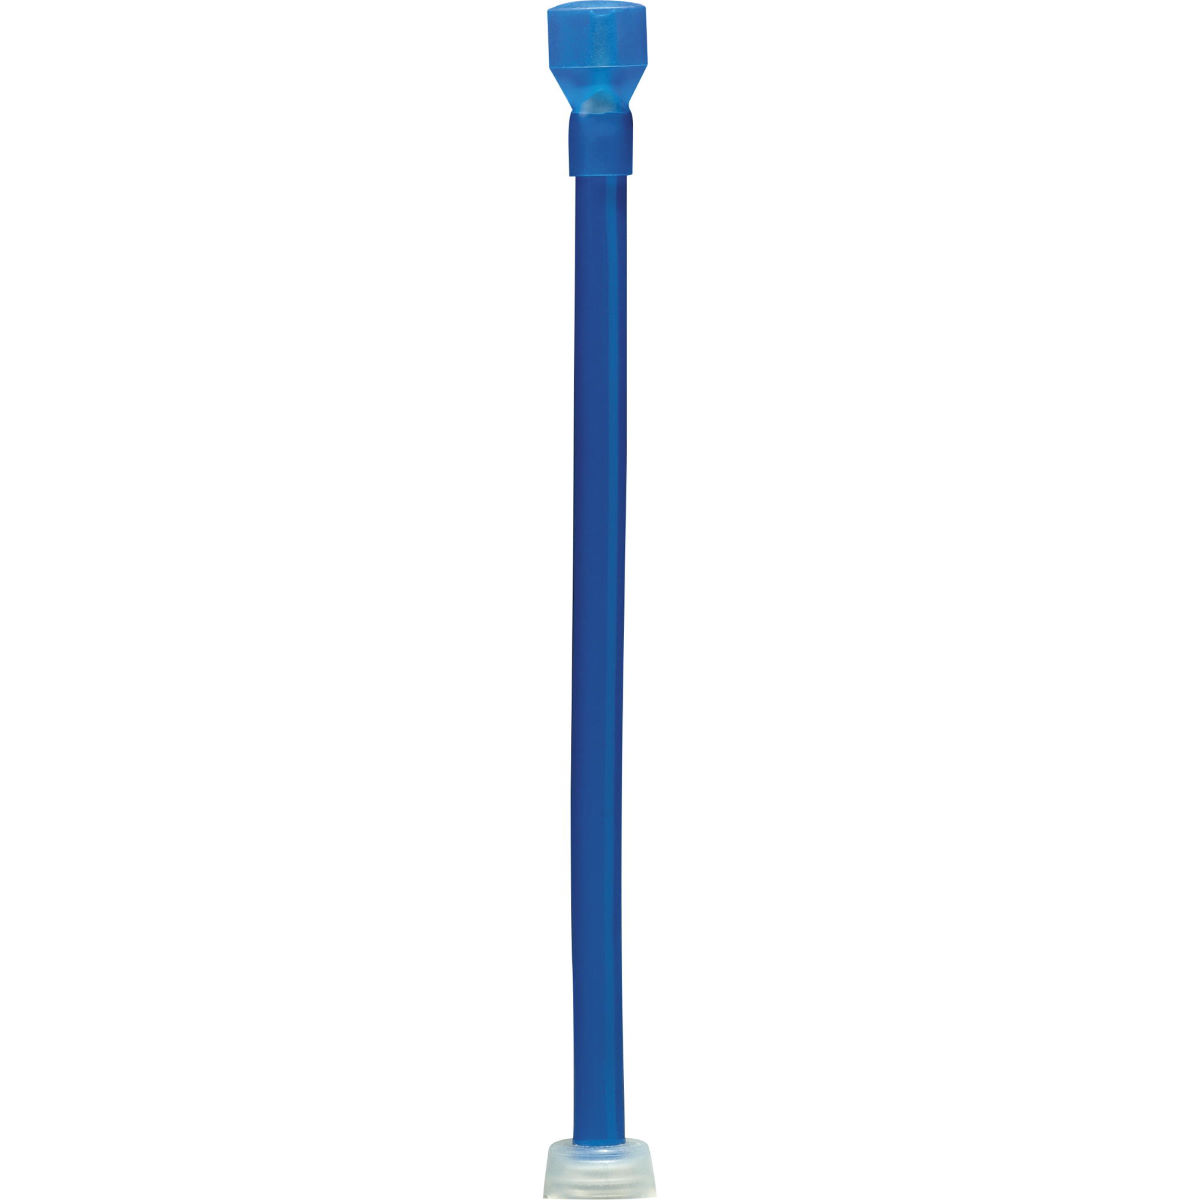 Camelbak Quick Stow Flask Tube Adapter - Recambios para sistemas de hidratación